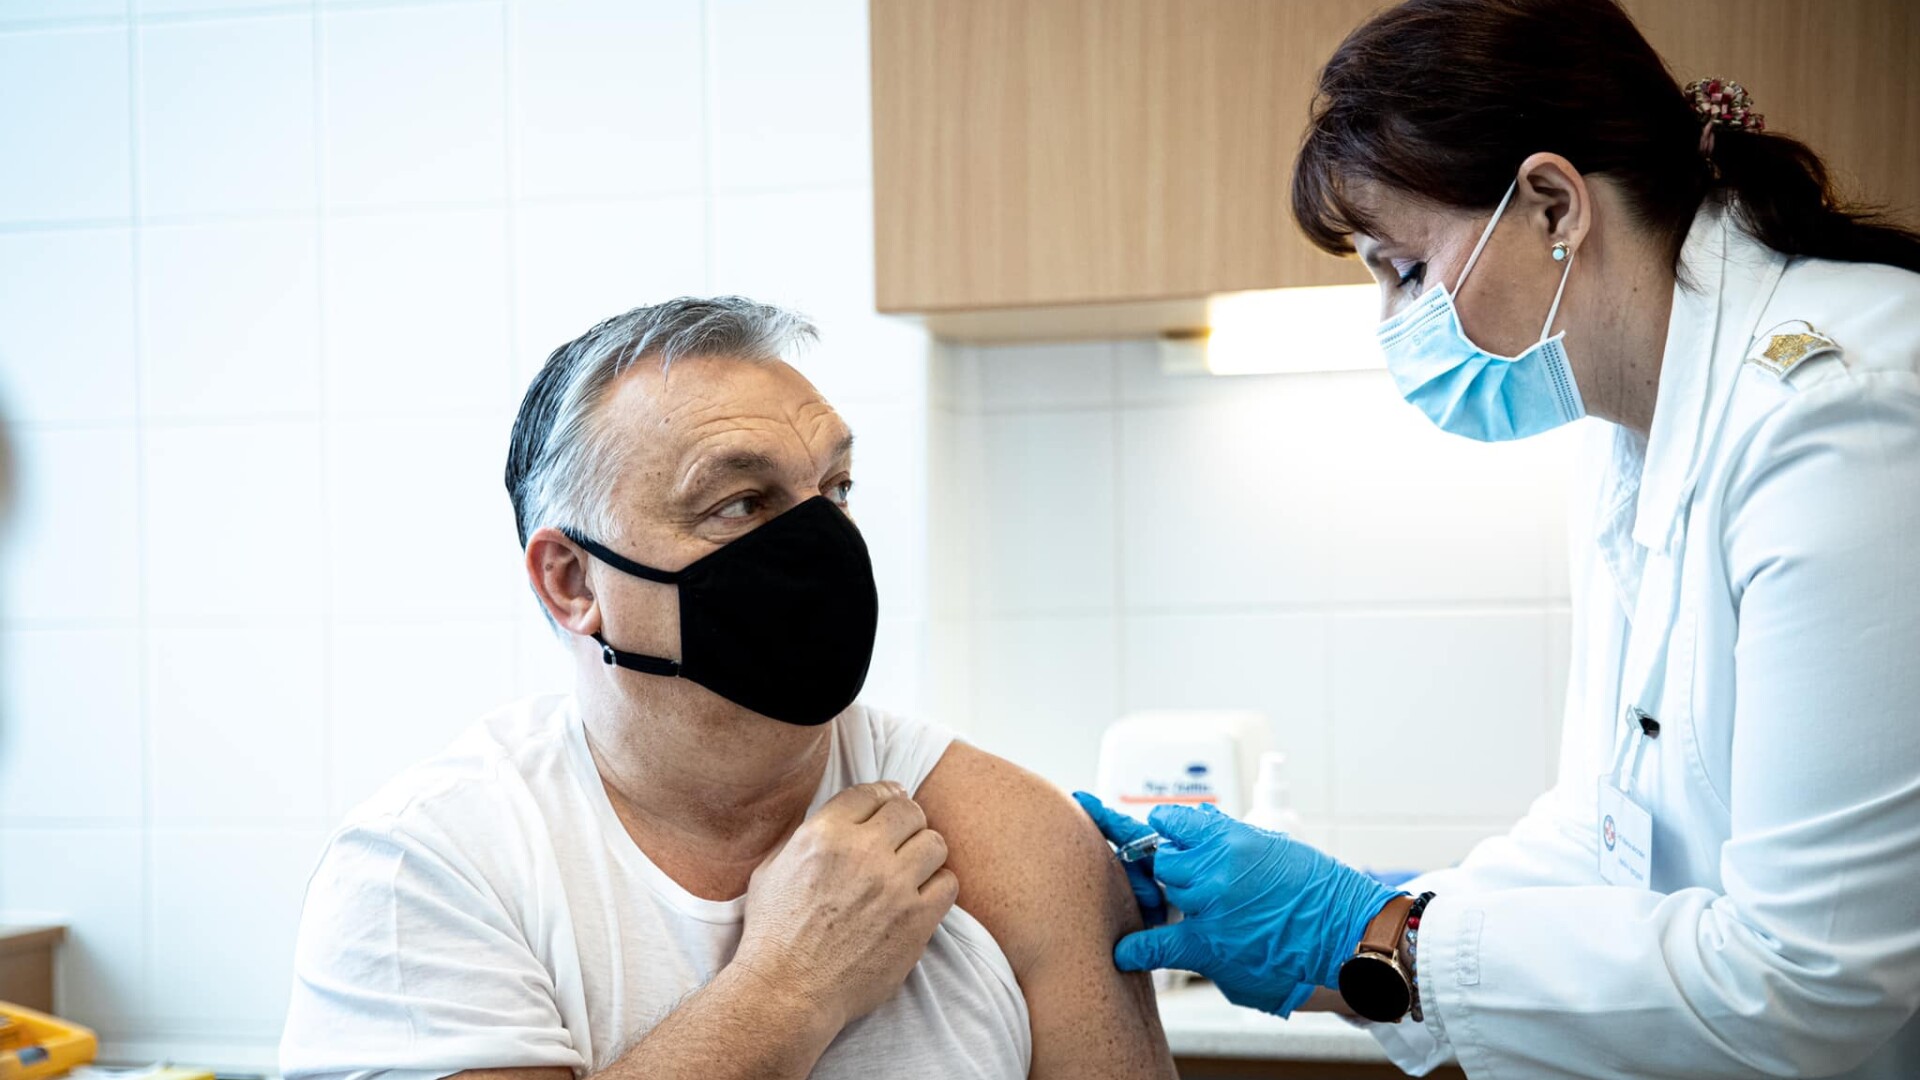 Viktor Orban s-a imunizat anti-Covid cu vaccinul chinezesc Sinopharm. Ce spune că ar merita Comisia Europeană